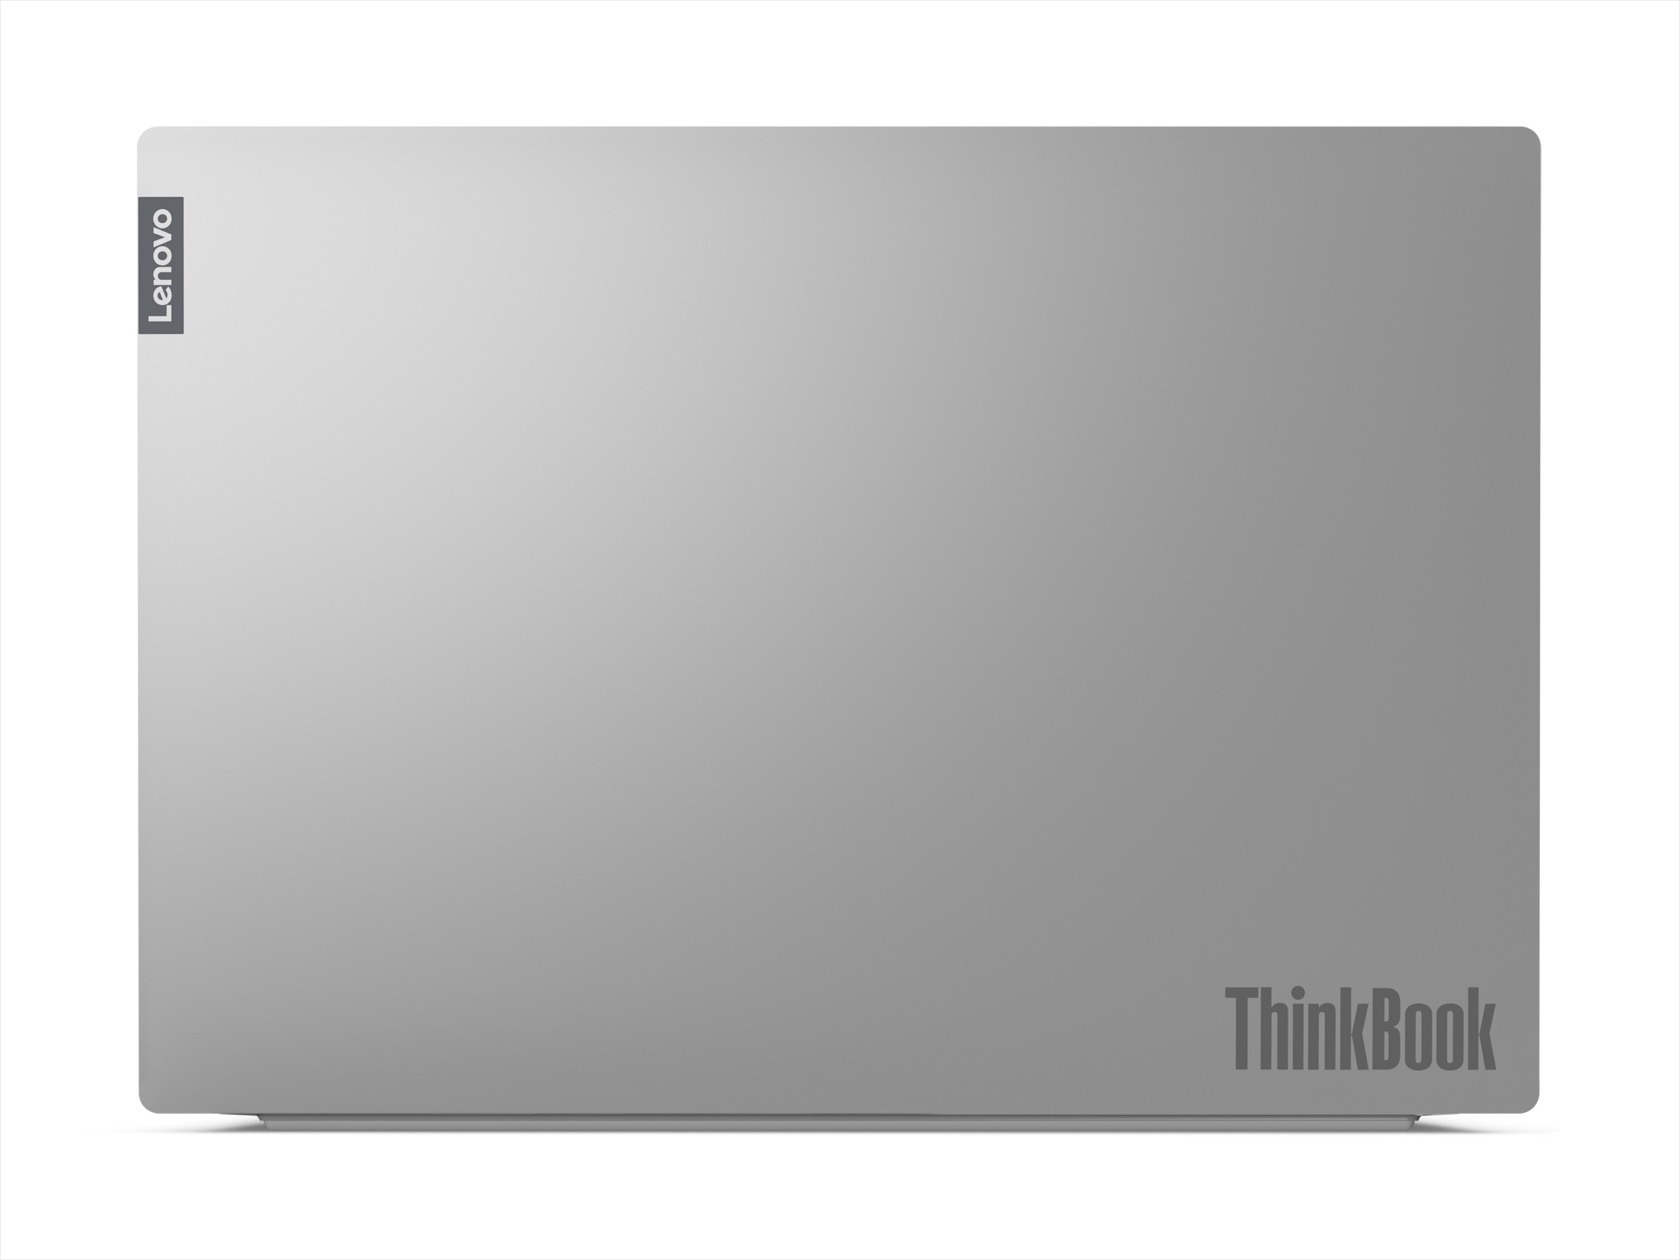 Lenovo ThinkBook 14 och 15 bärbara datorer anländer till IFA 2019 1